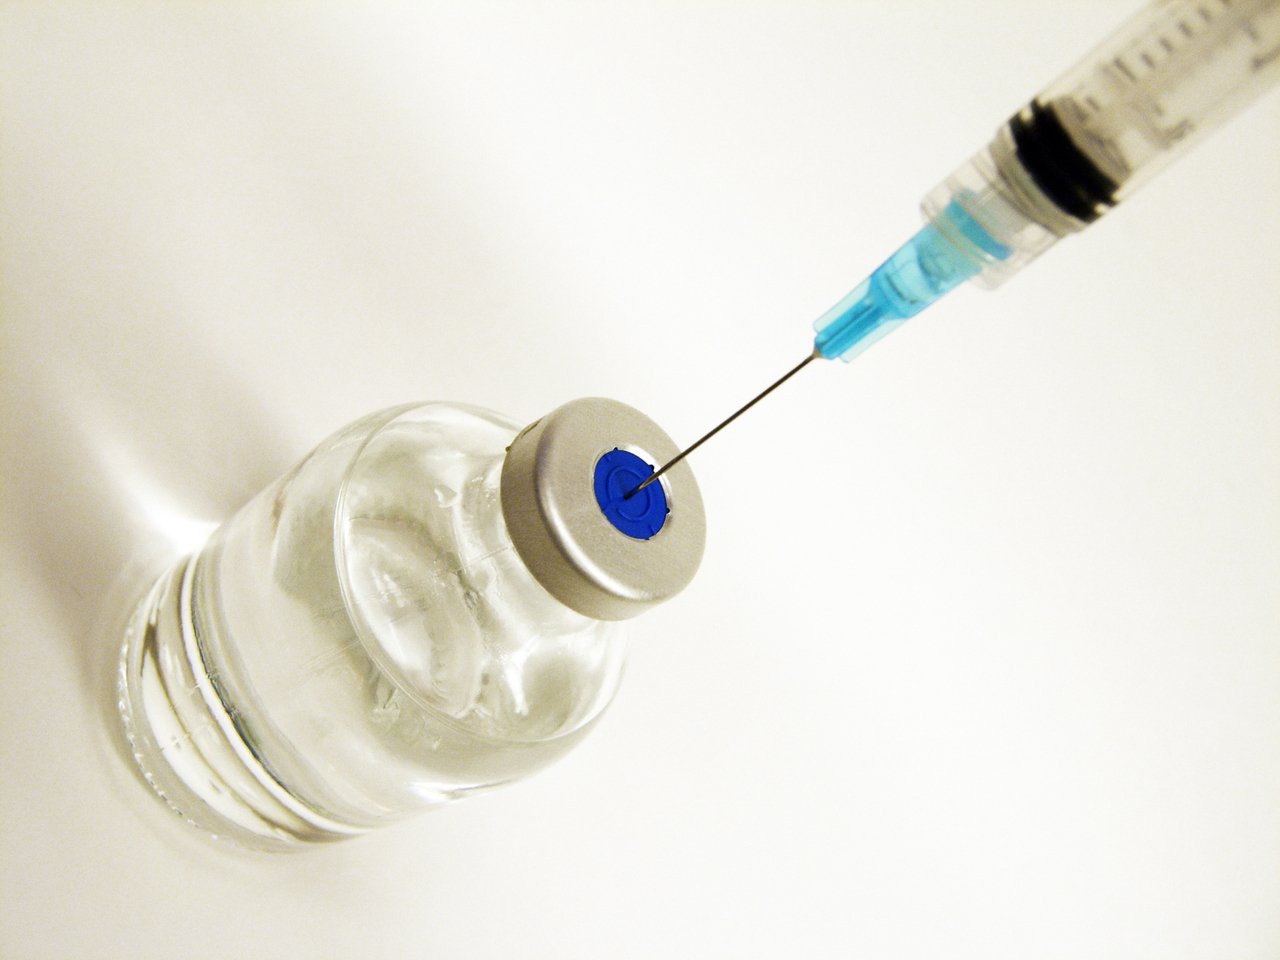 Ministerul Sănătății va distribui în această săptămână încă 930.000 doze de vaccin antigripal către DSP-uri